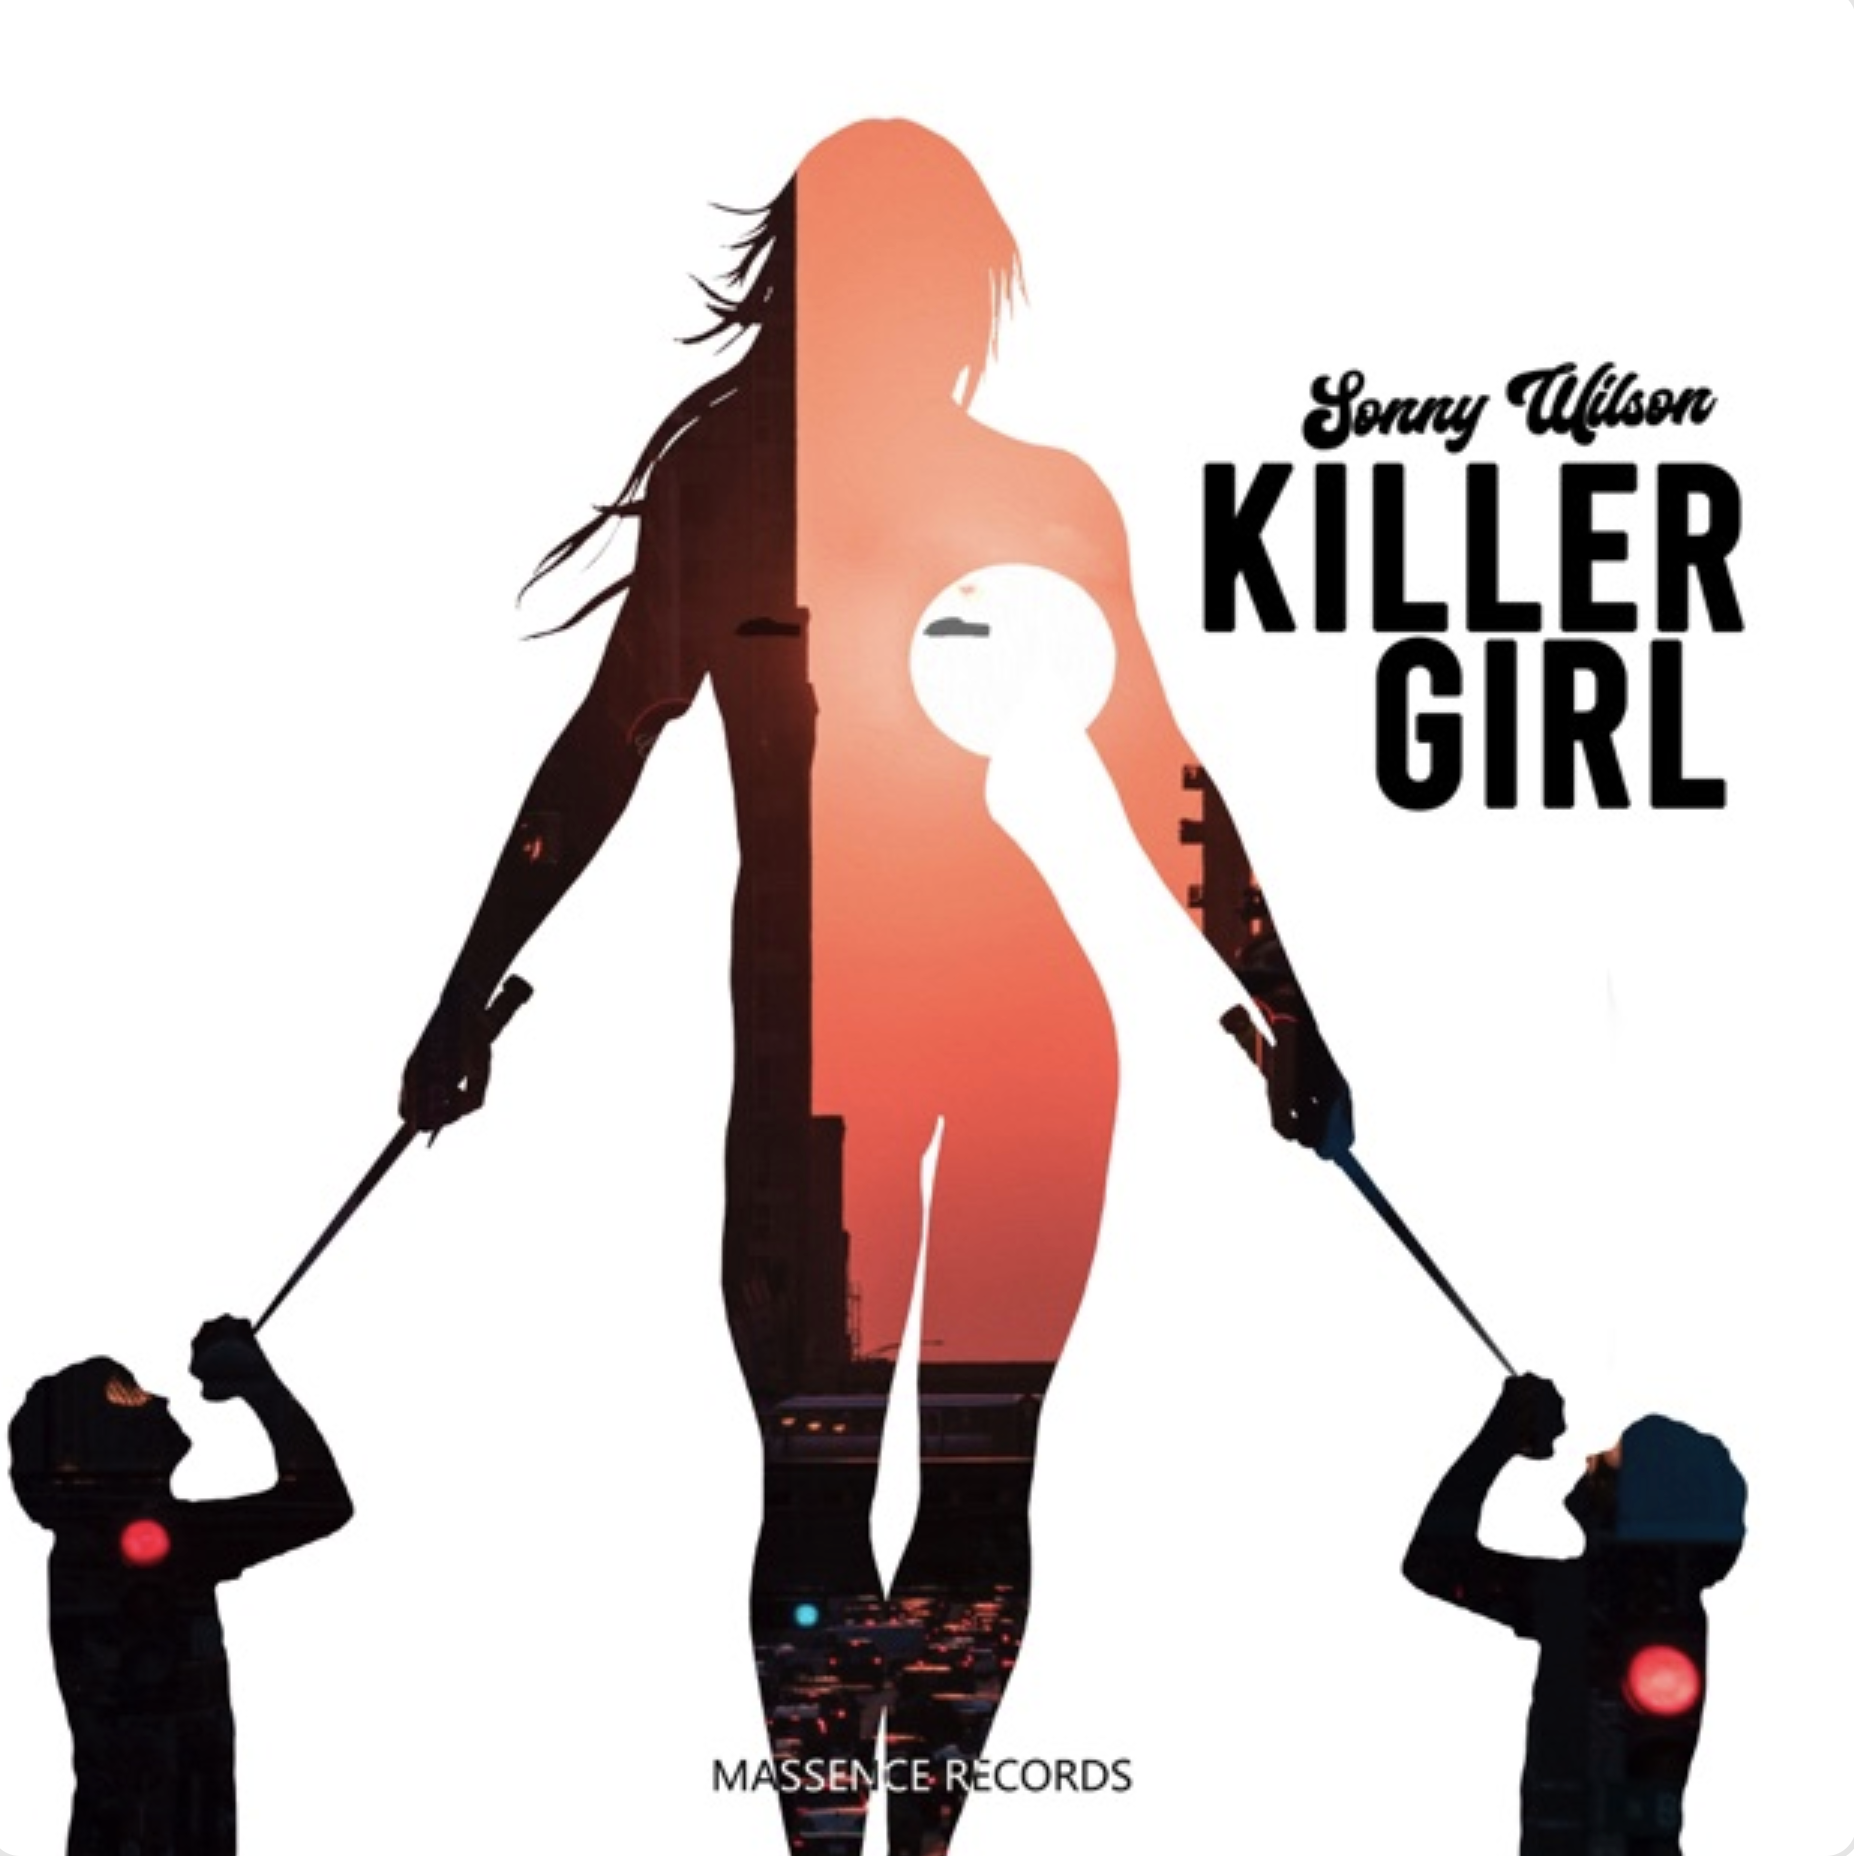 SONNY WILSON - KILLER GIRL (2020) single